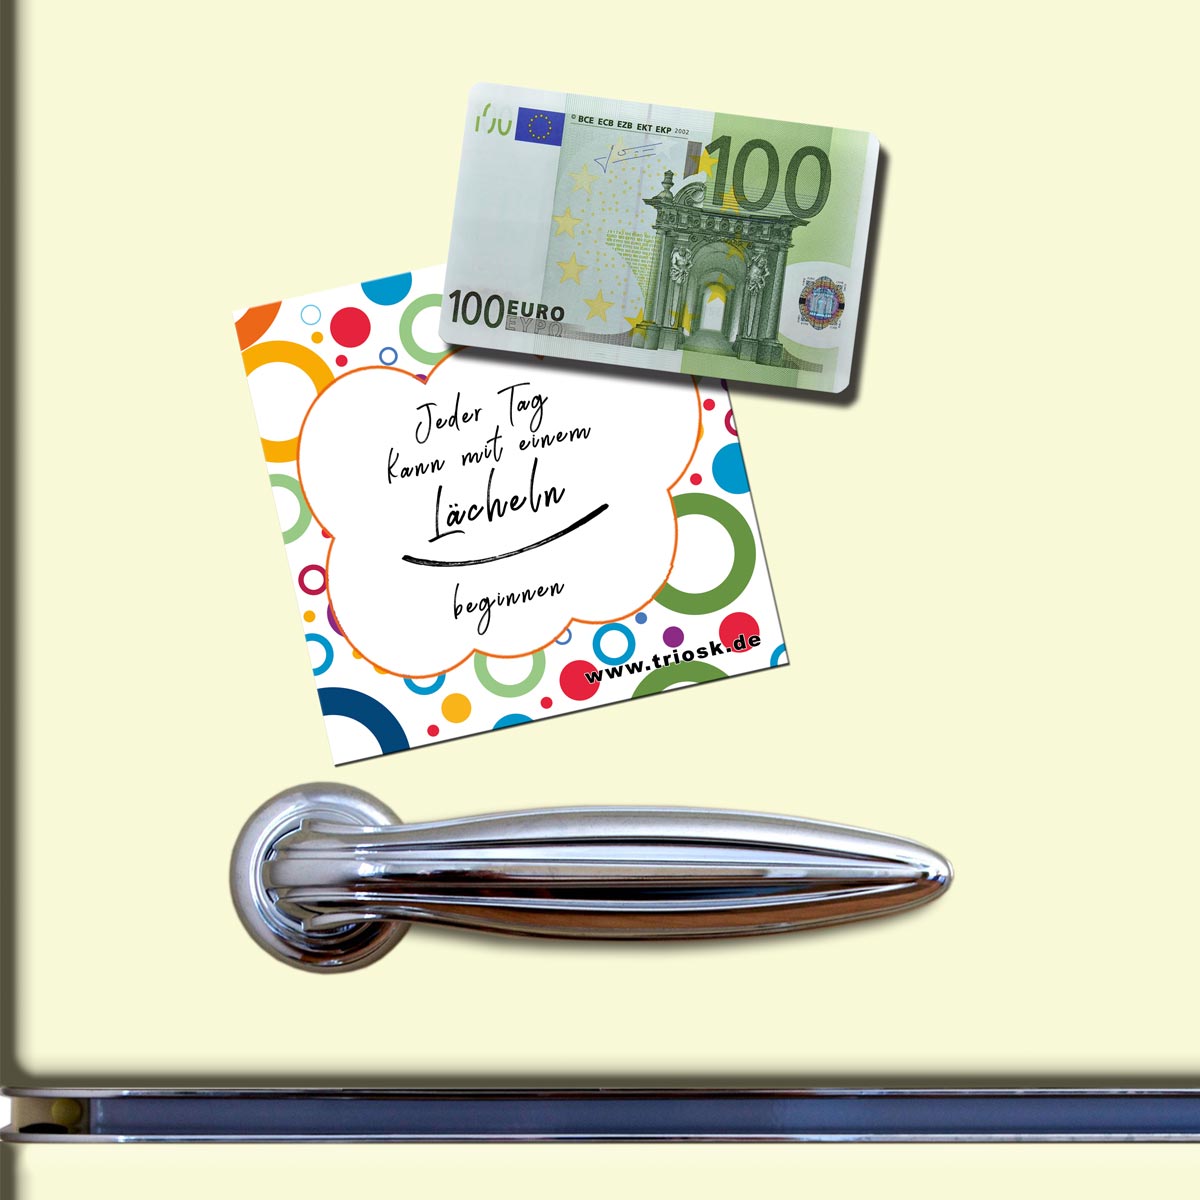 100 Euroschein, Geldschein Magnet 8,5x5,5 cm, Geld, Magnete